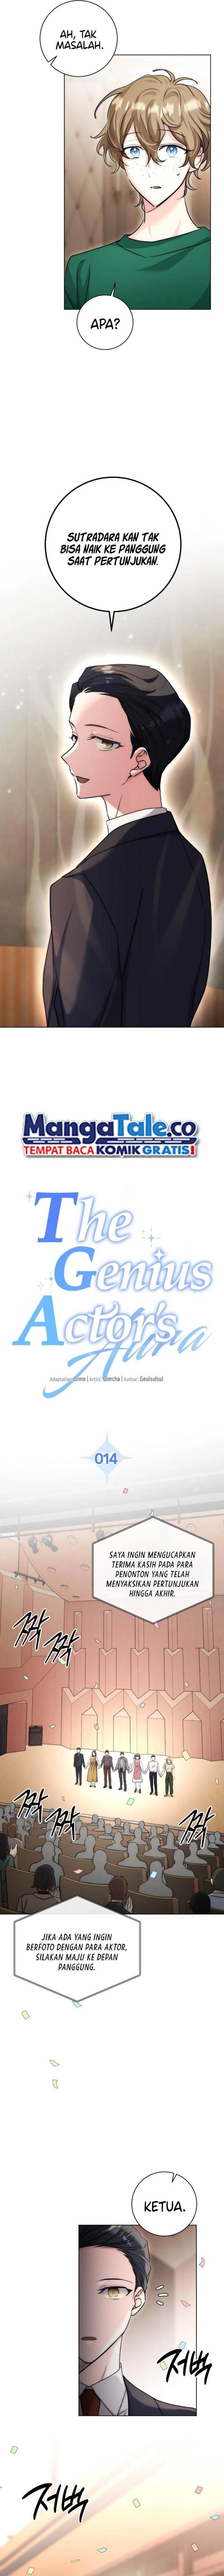 Genius Actor’s Aura Chapter 14